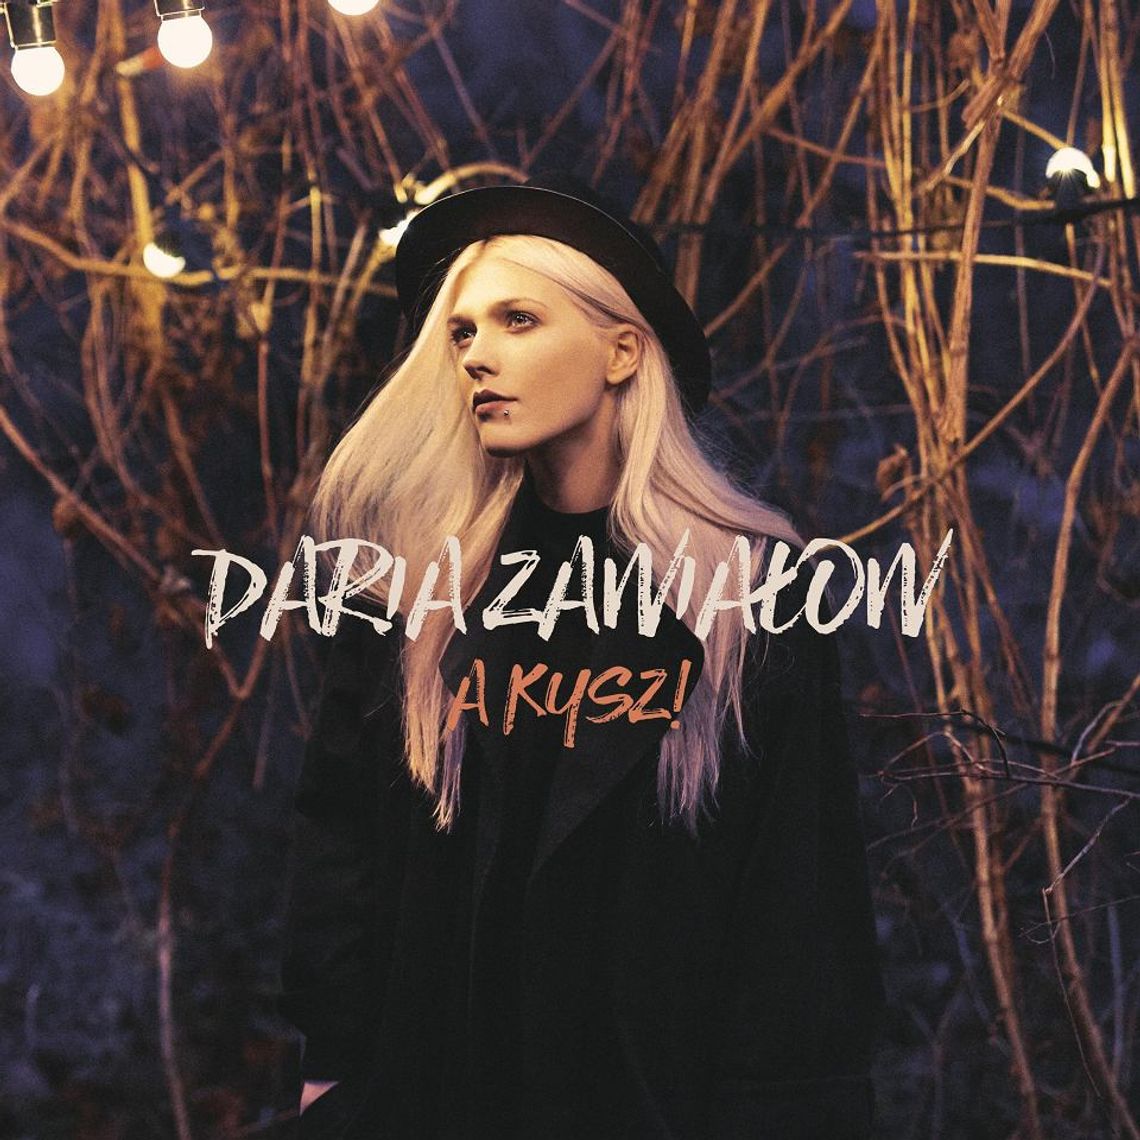 Płyta tygodnia: Daria Zawiałow "A kysz!"